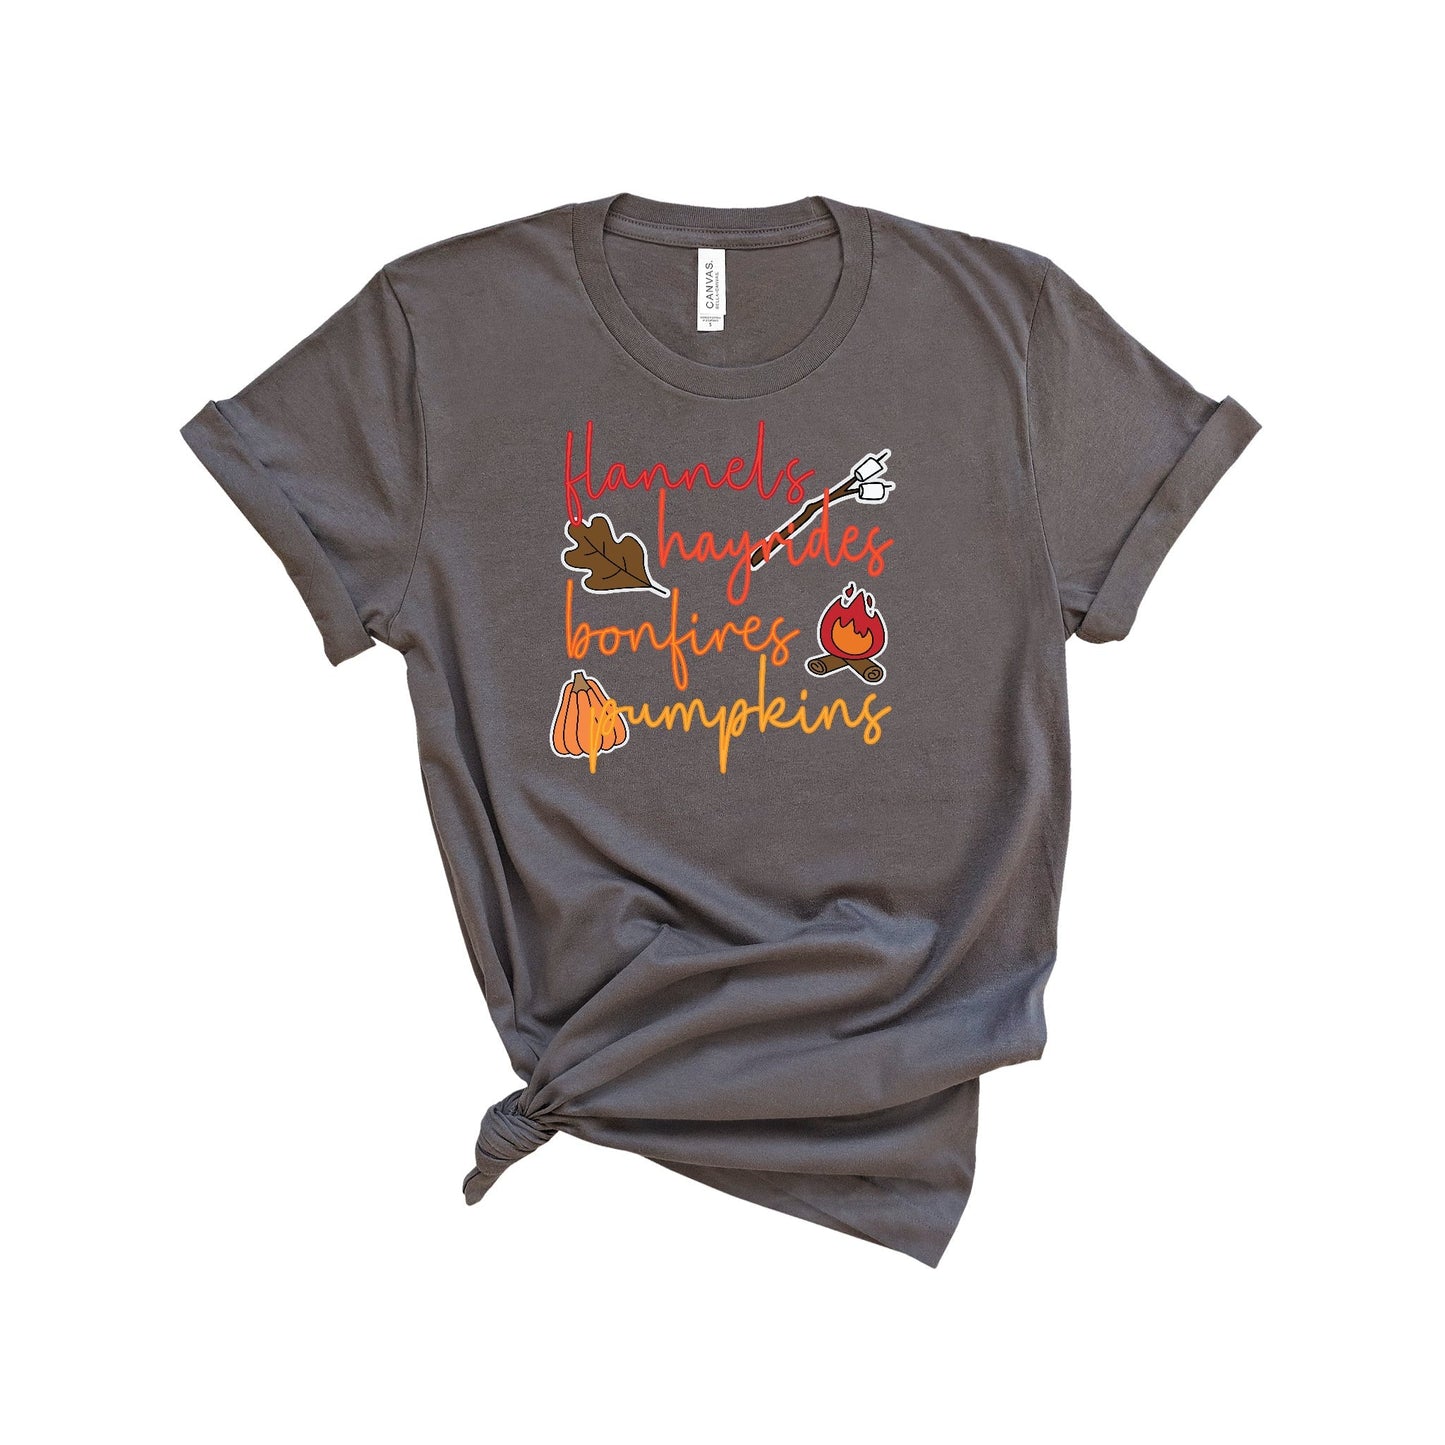 Flannels Hayrides Bonfires Pumpkins Shirt, Rainbow Font Shirt, Fall Shirt, Womens Fall Shirt, Thanksgiving Shirt, Pumpkin Shirt, Autumn Tee - Premium T-Shirt - Just $21.50! Shop now at Nine Thirty Nine Design